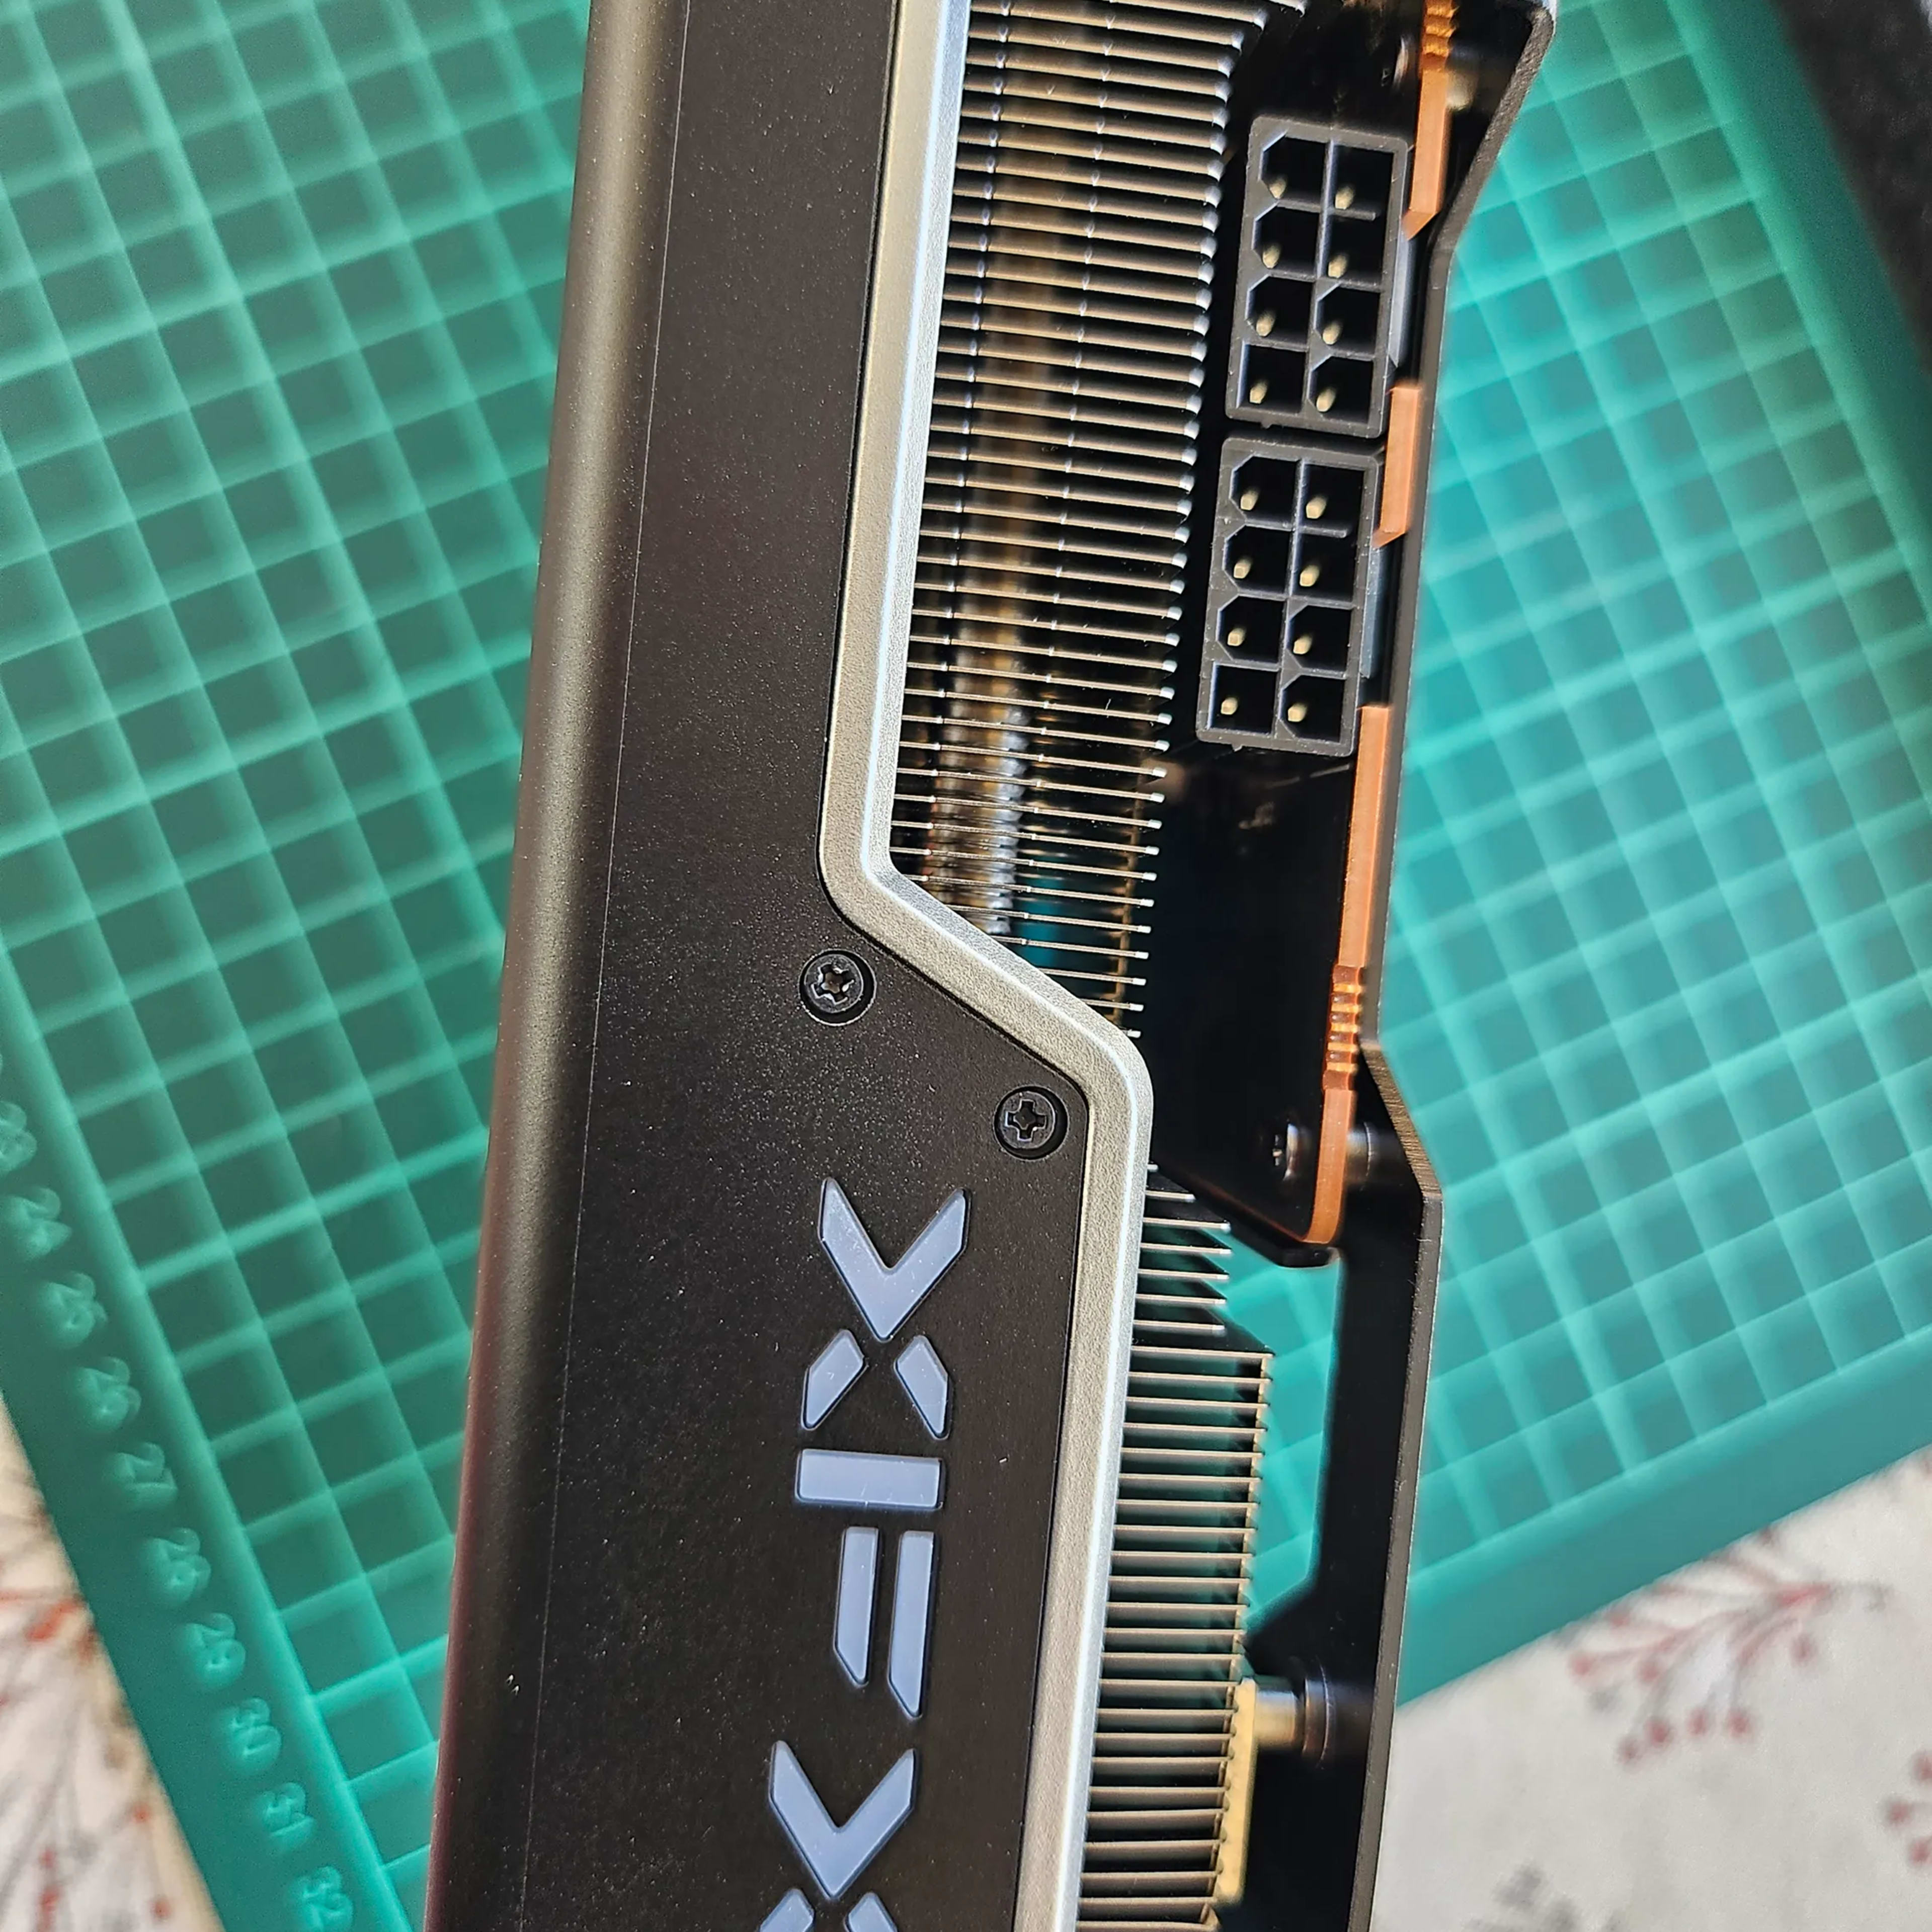 *LIKE NEW* XFX Speedster MERC310 Radeon 7900 XT Ultra